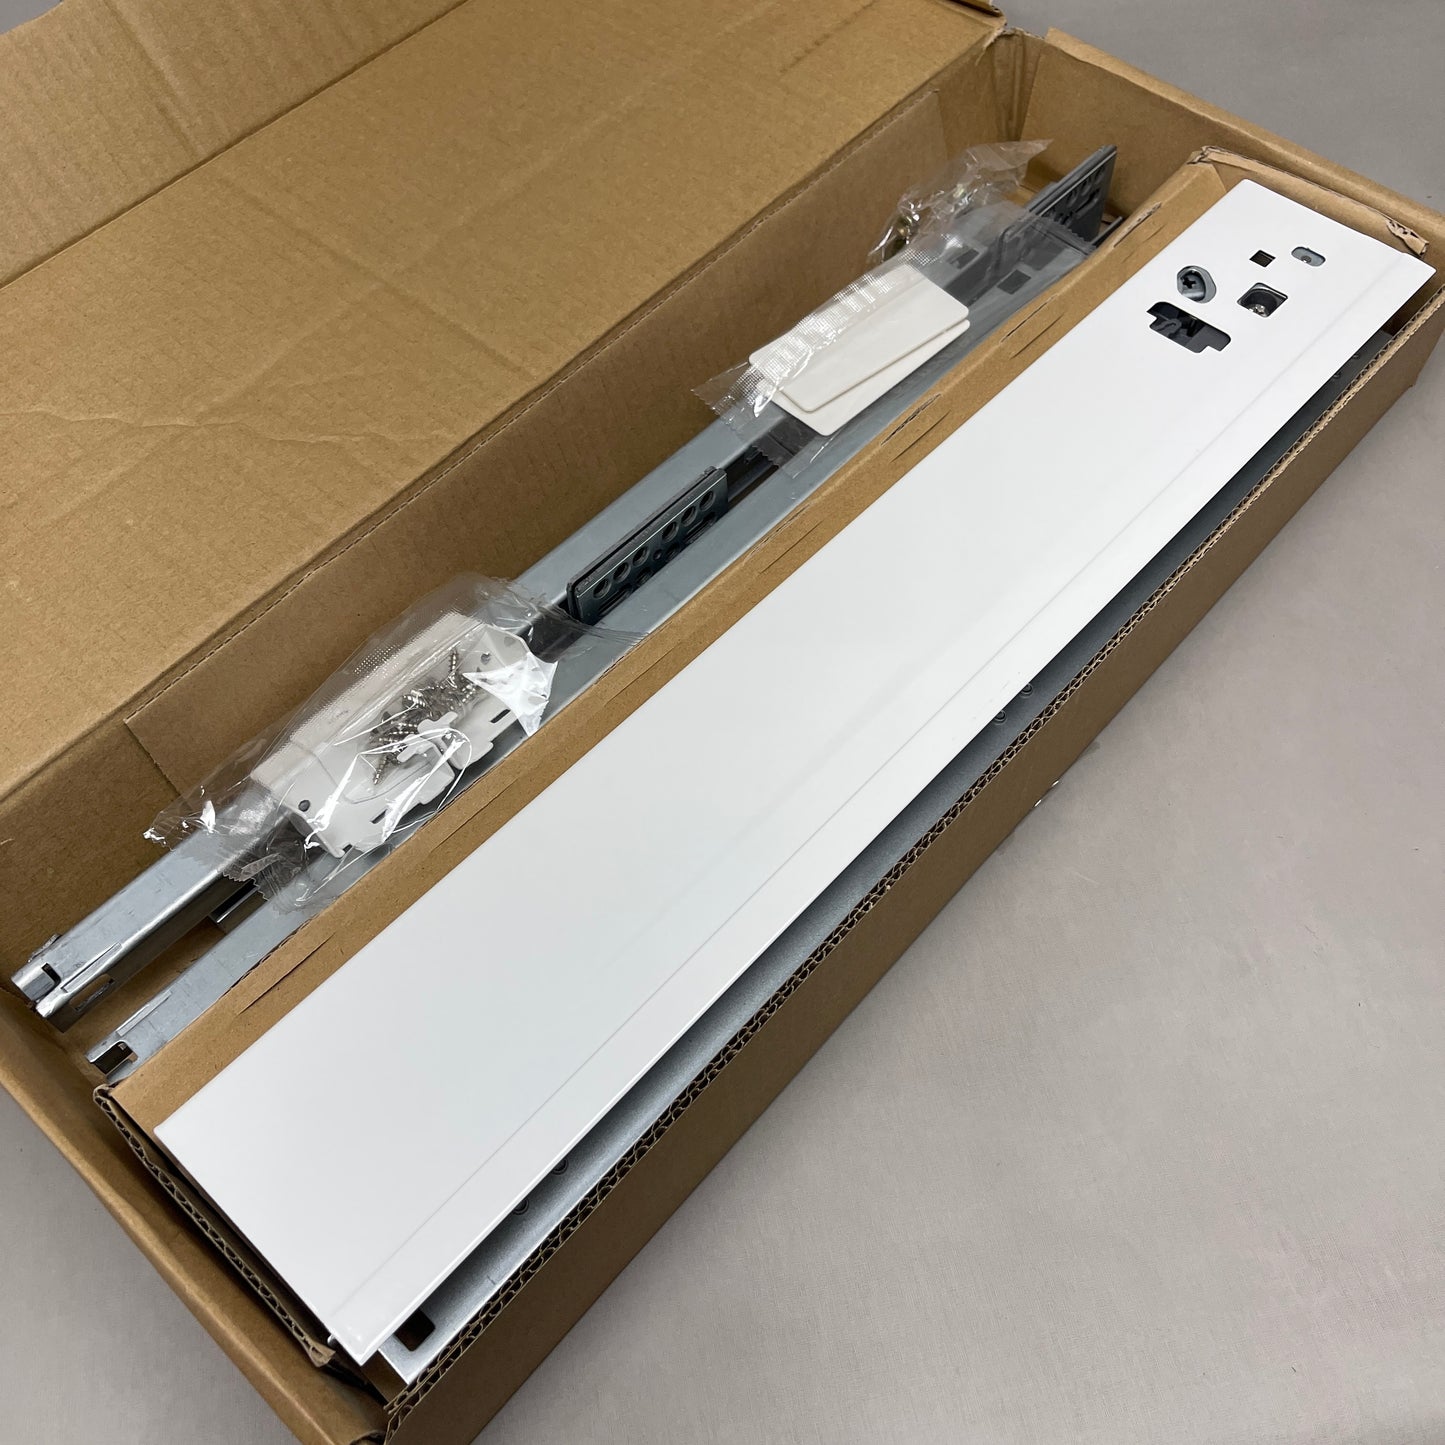 1-Pair of Soft-Close Lower Drawer Runner Kit (Drawer Glides, Slides) White B01500A (New)